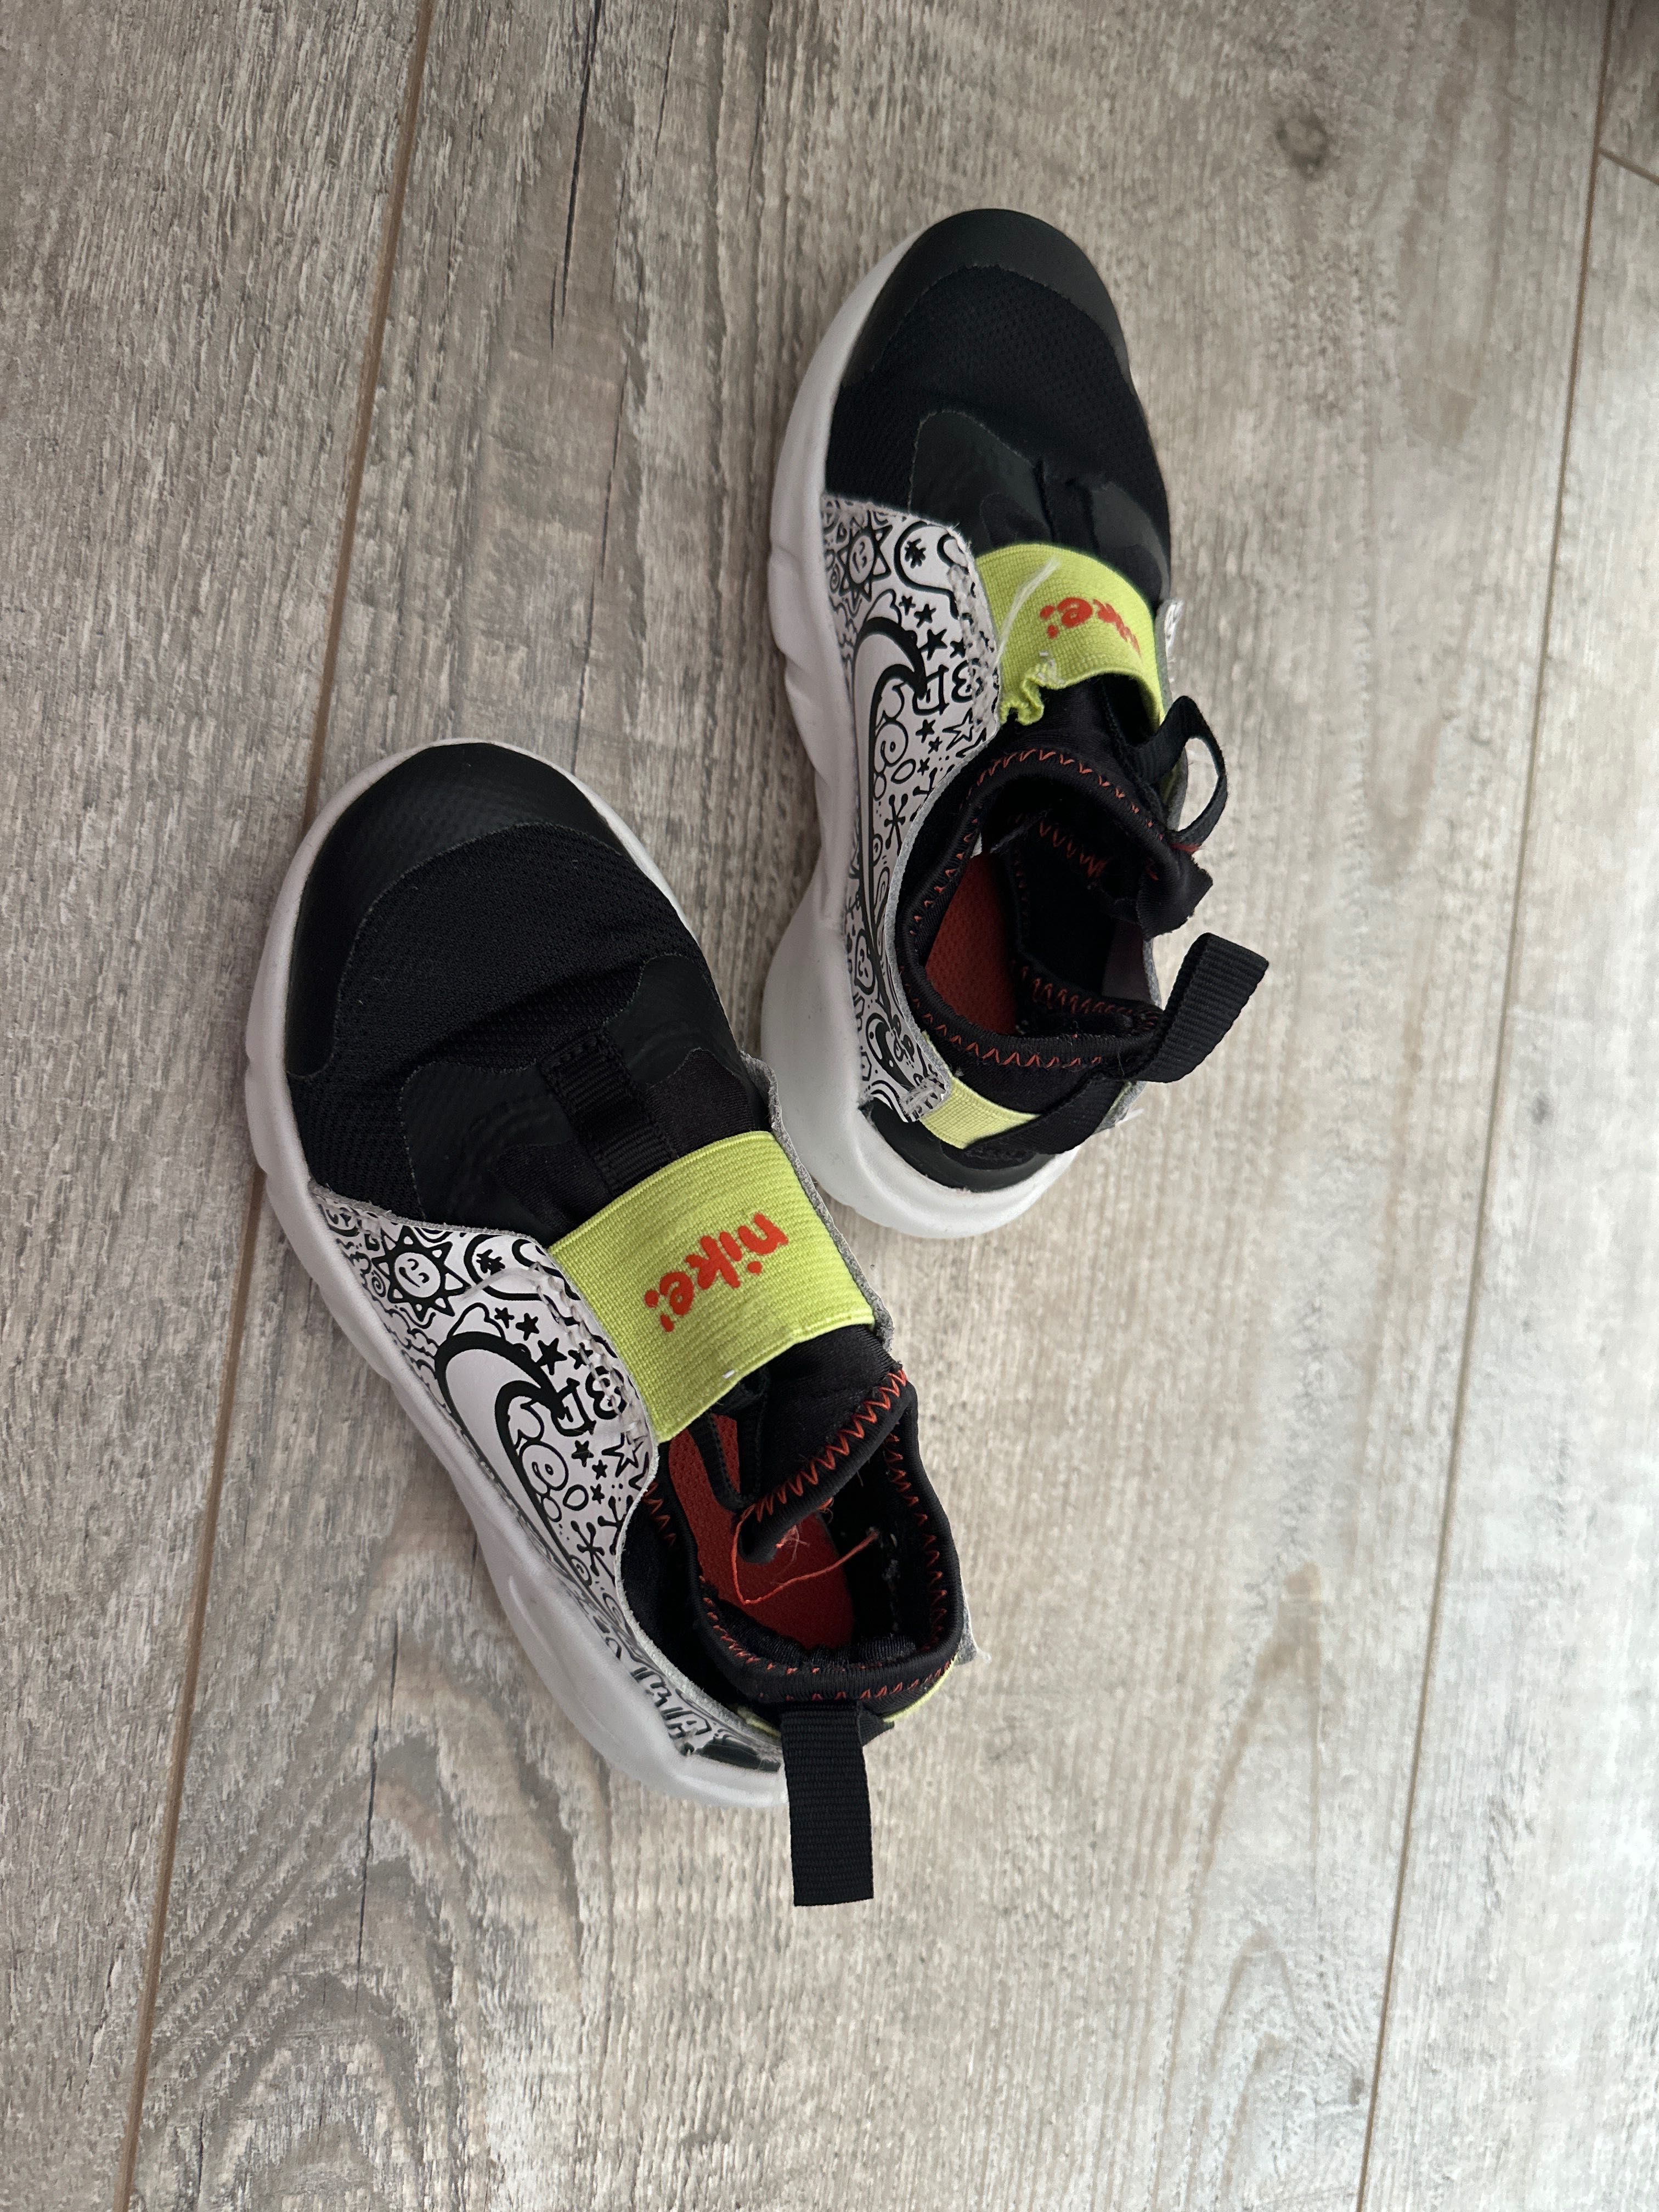 Buty Nike Flex Runner 2 adidasy dziecięce 28 17 cm wsuwane